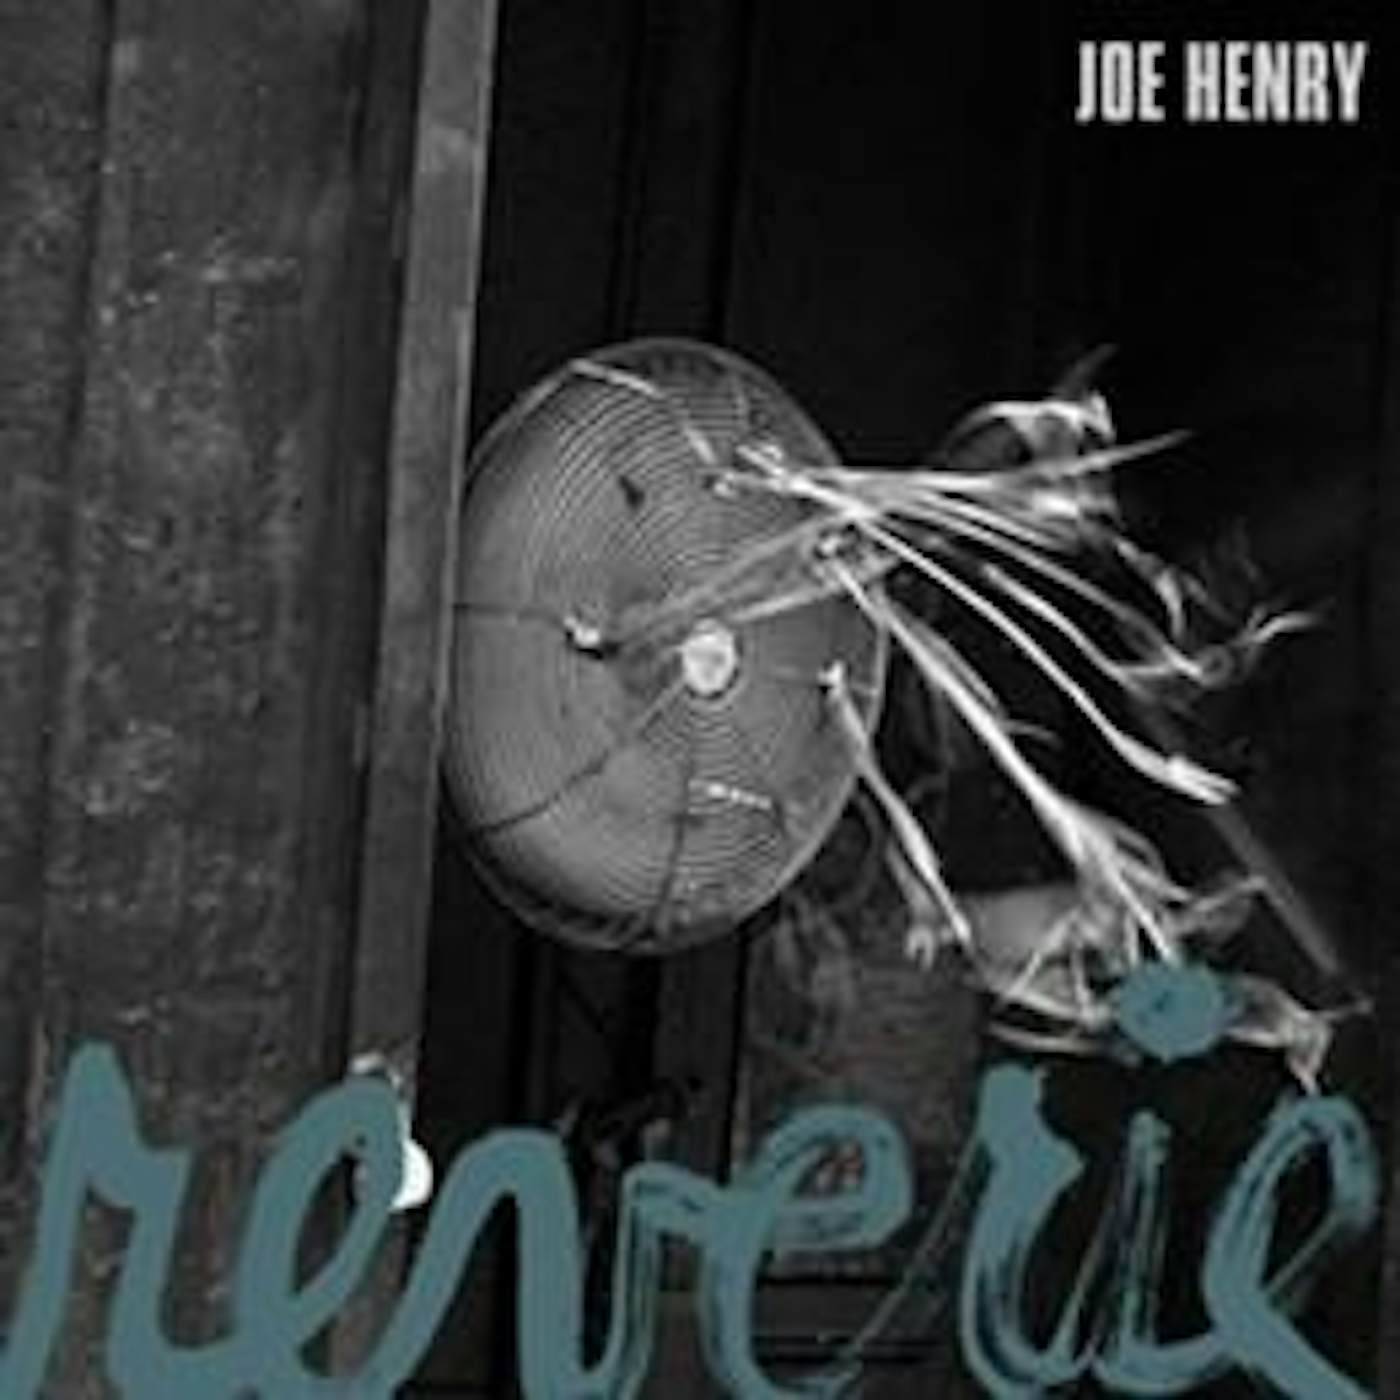 Joe Henry Reverie Vinyl Record